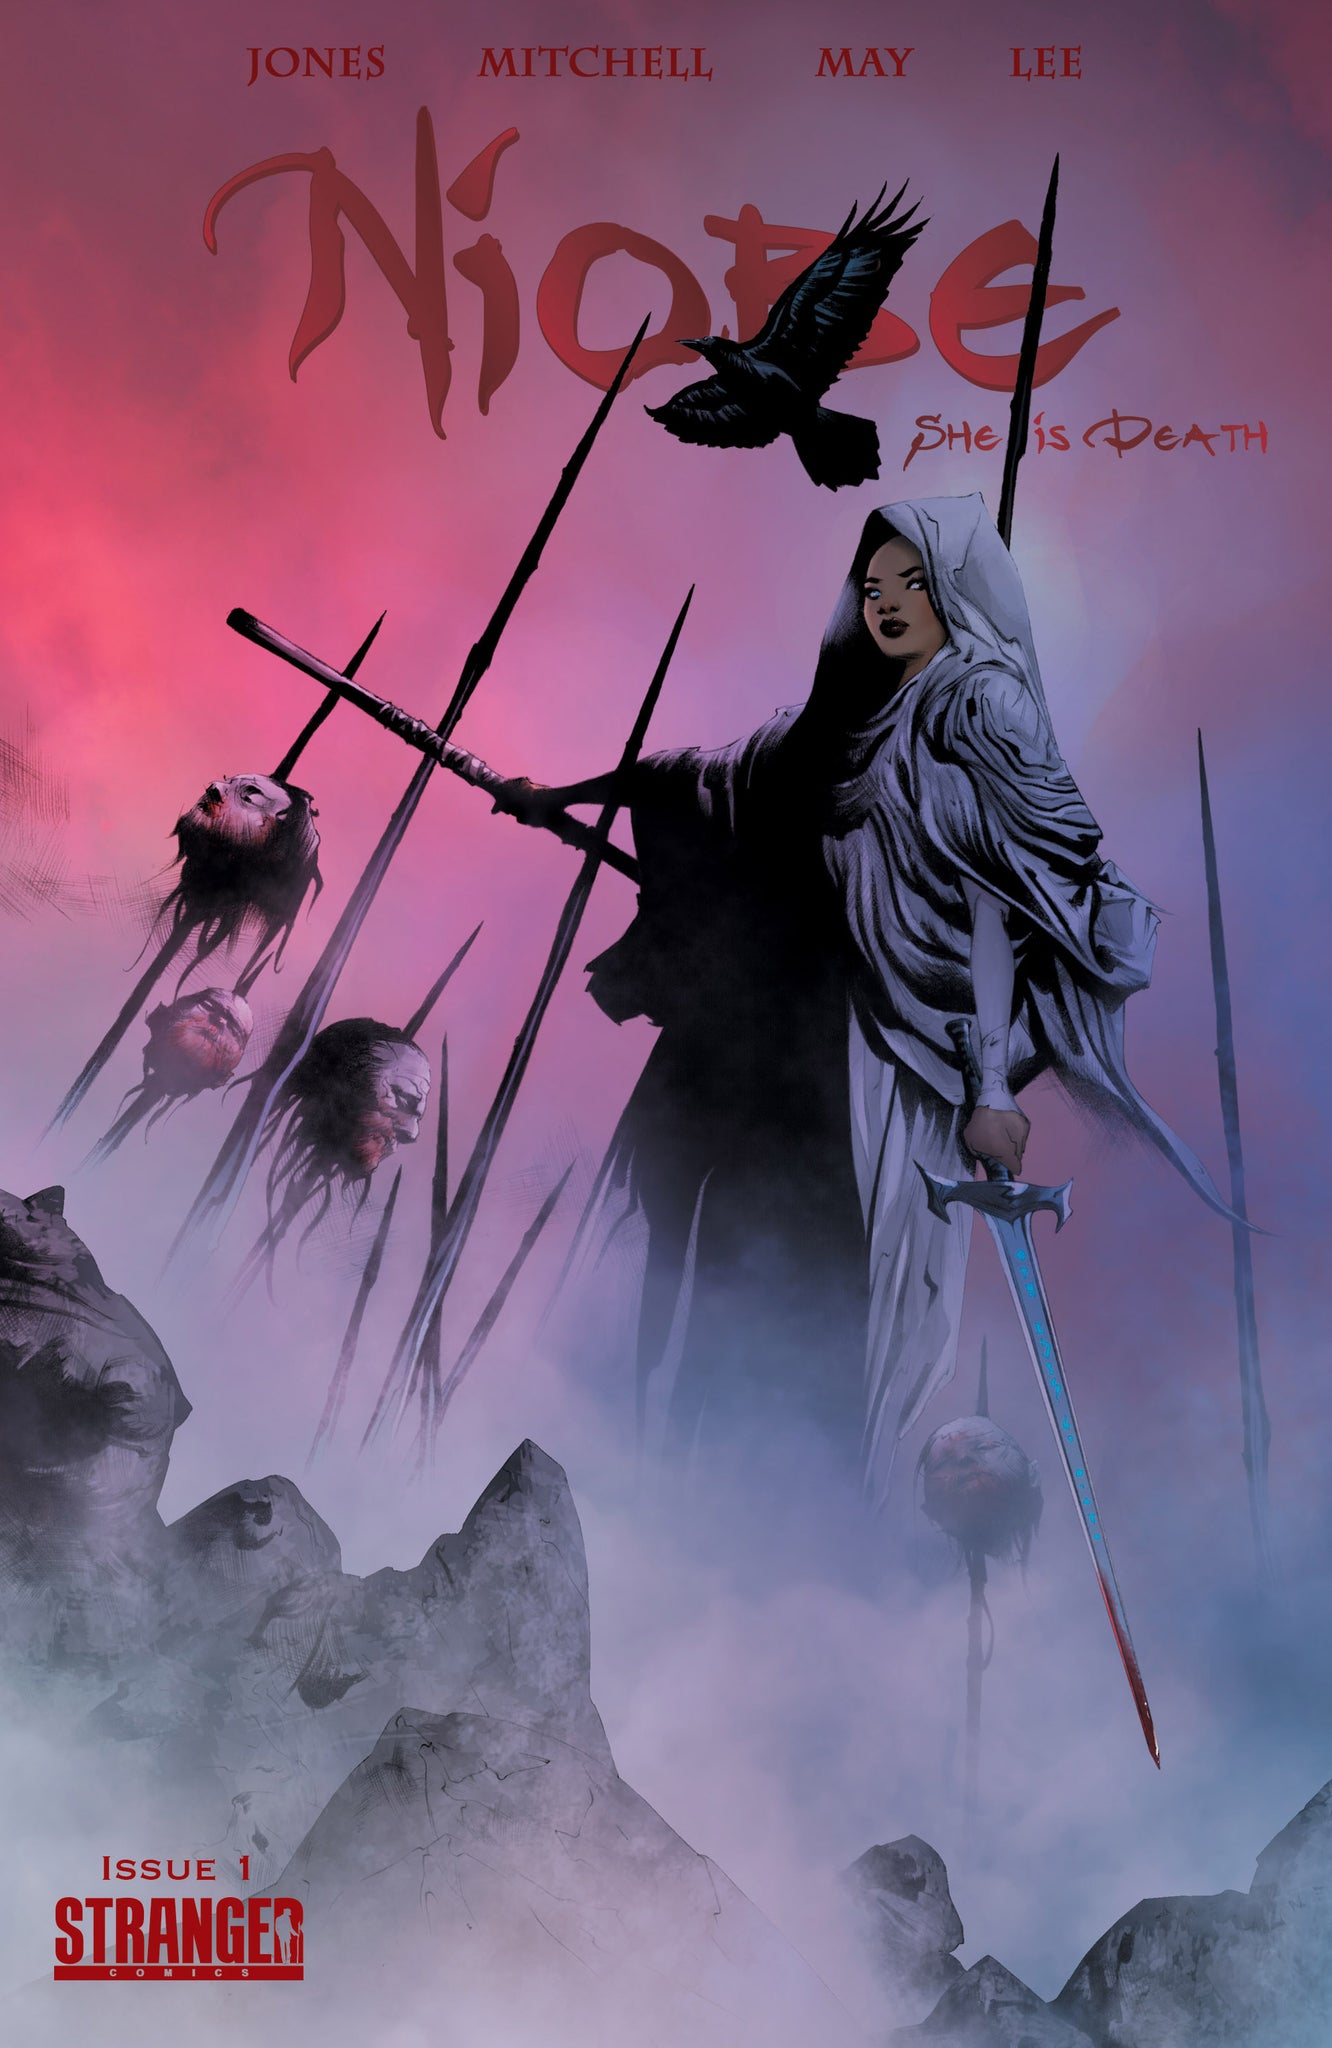 Niobe: She is Death #1 (Vol. 2, Issue 1) eBook